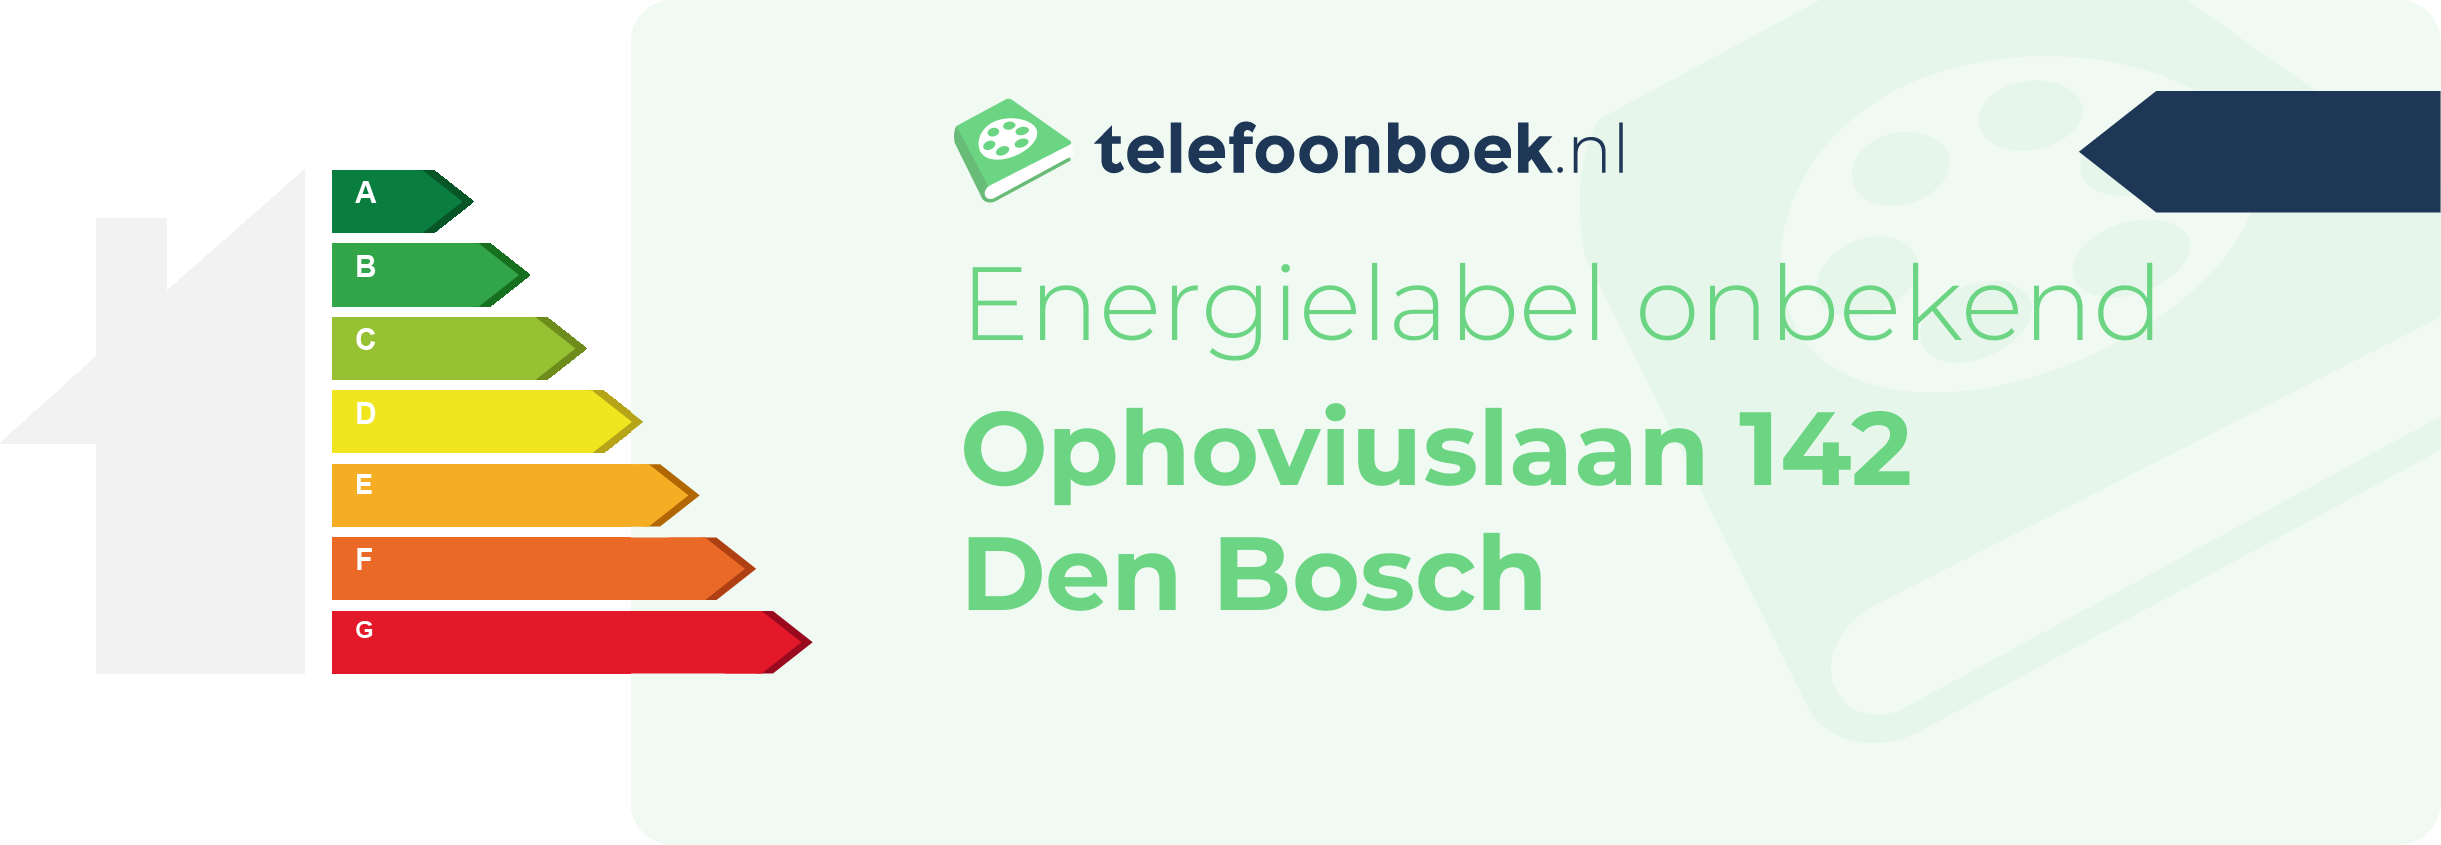 Energielabel Ophoviuslaan 142 Den Bosch